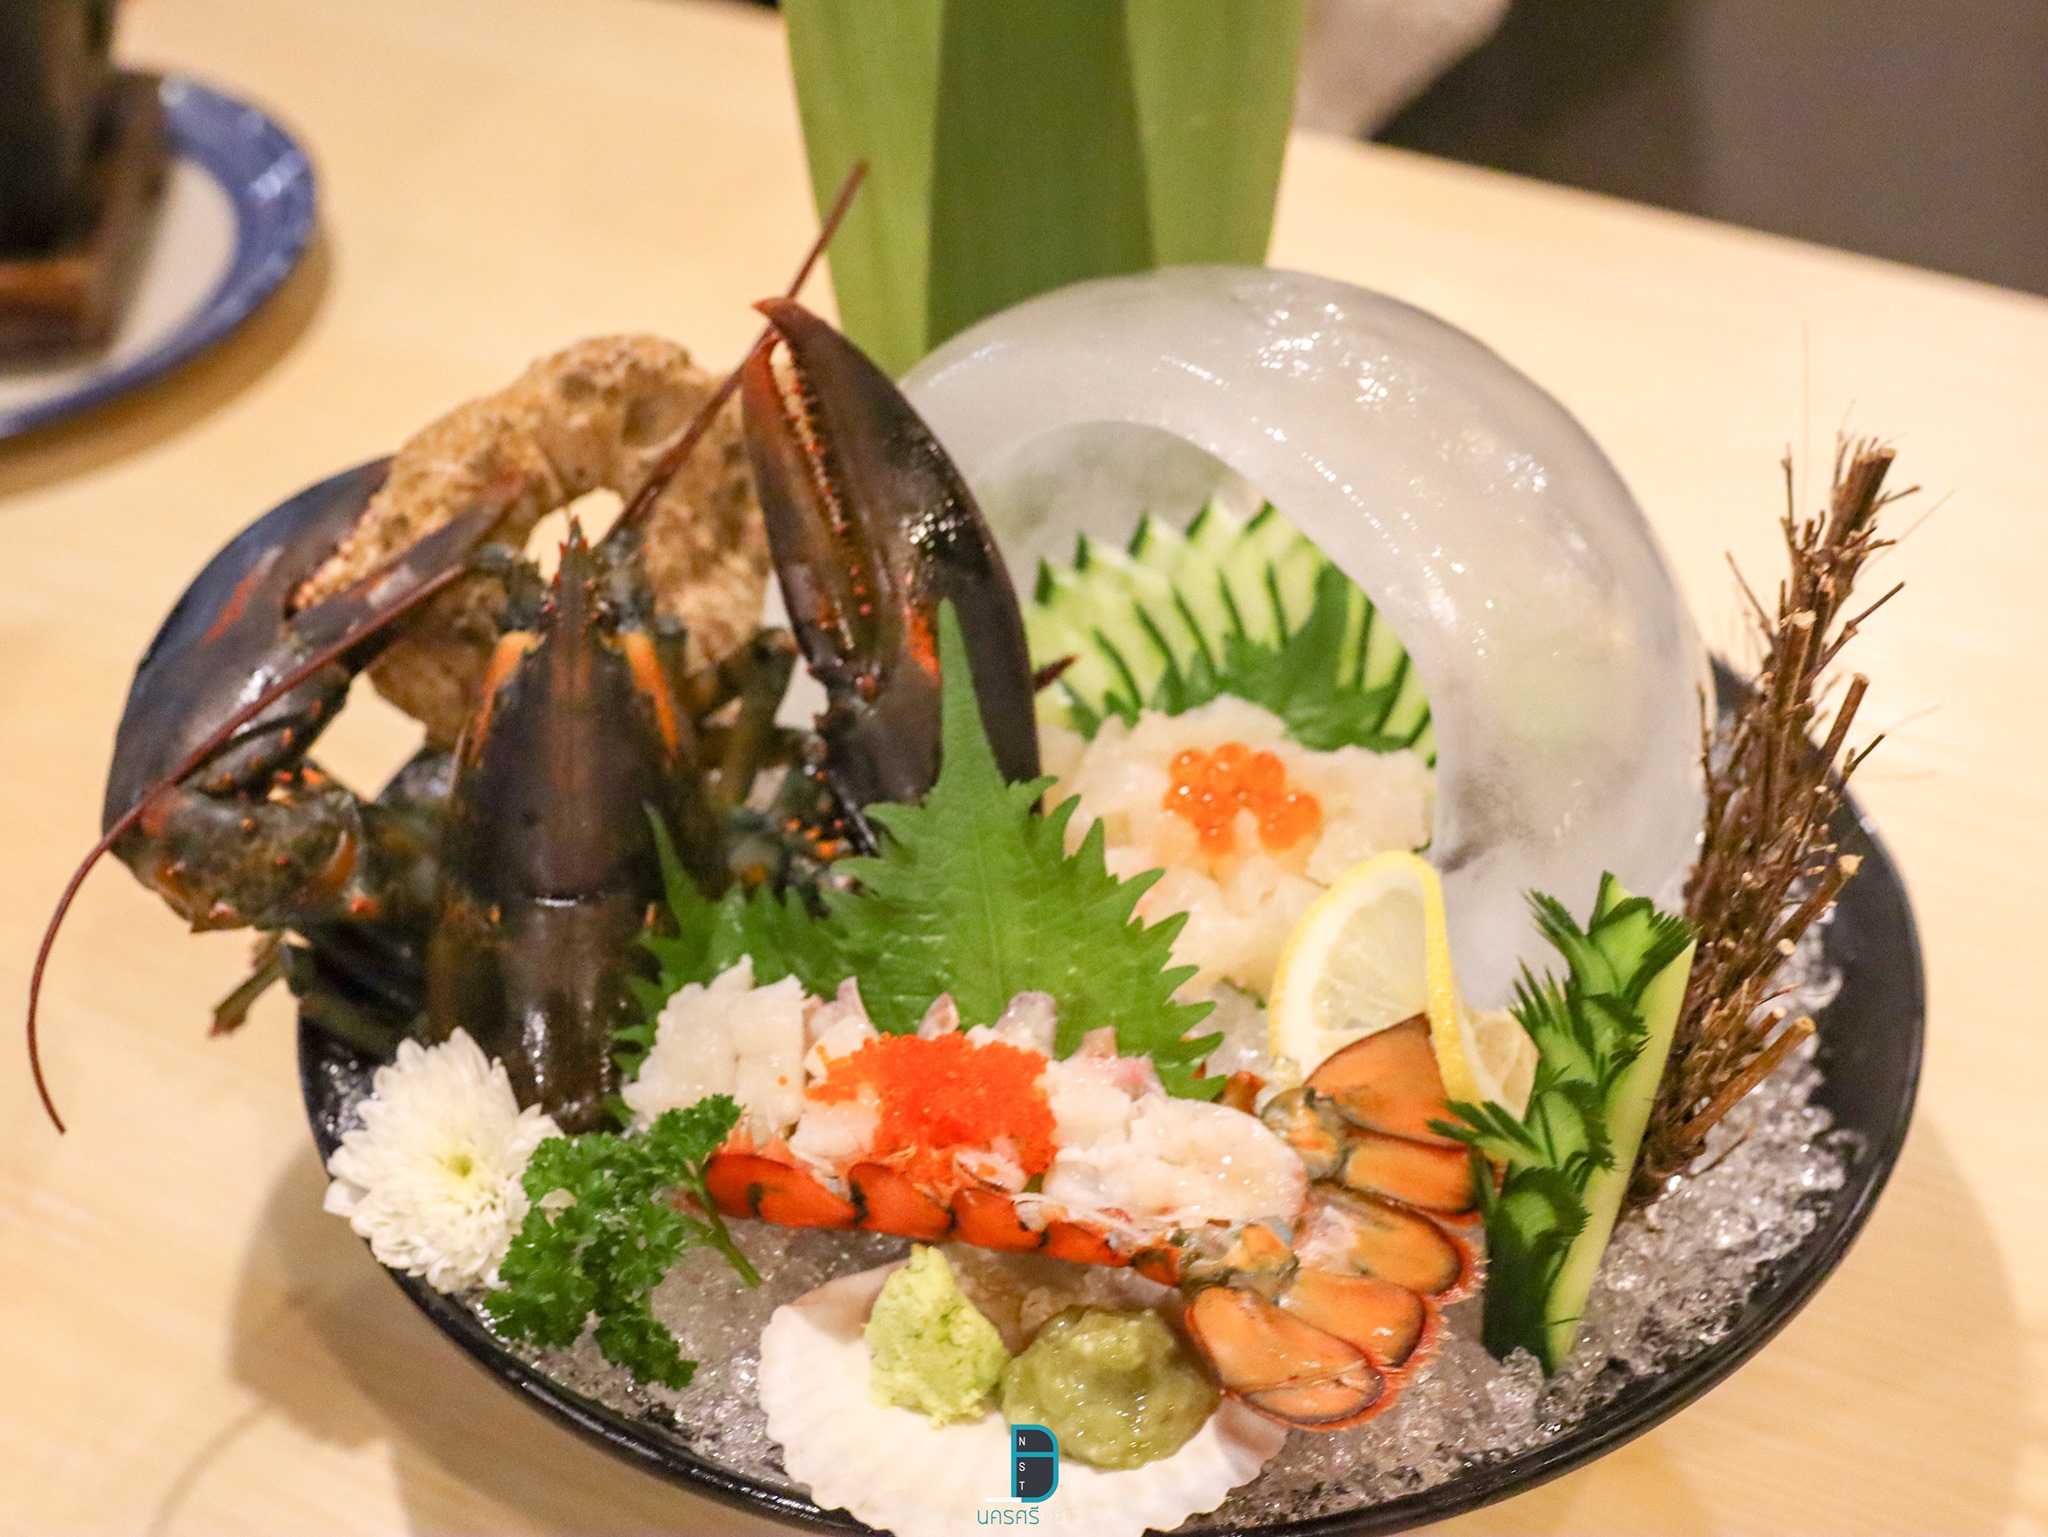   hatyaisasimi,ของกิน,หาดใหญ่ซาซิมิ,ร้านอาหารญี่ปุ่น,อร่อย,จุดเช็คอิน